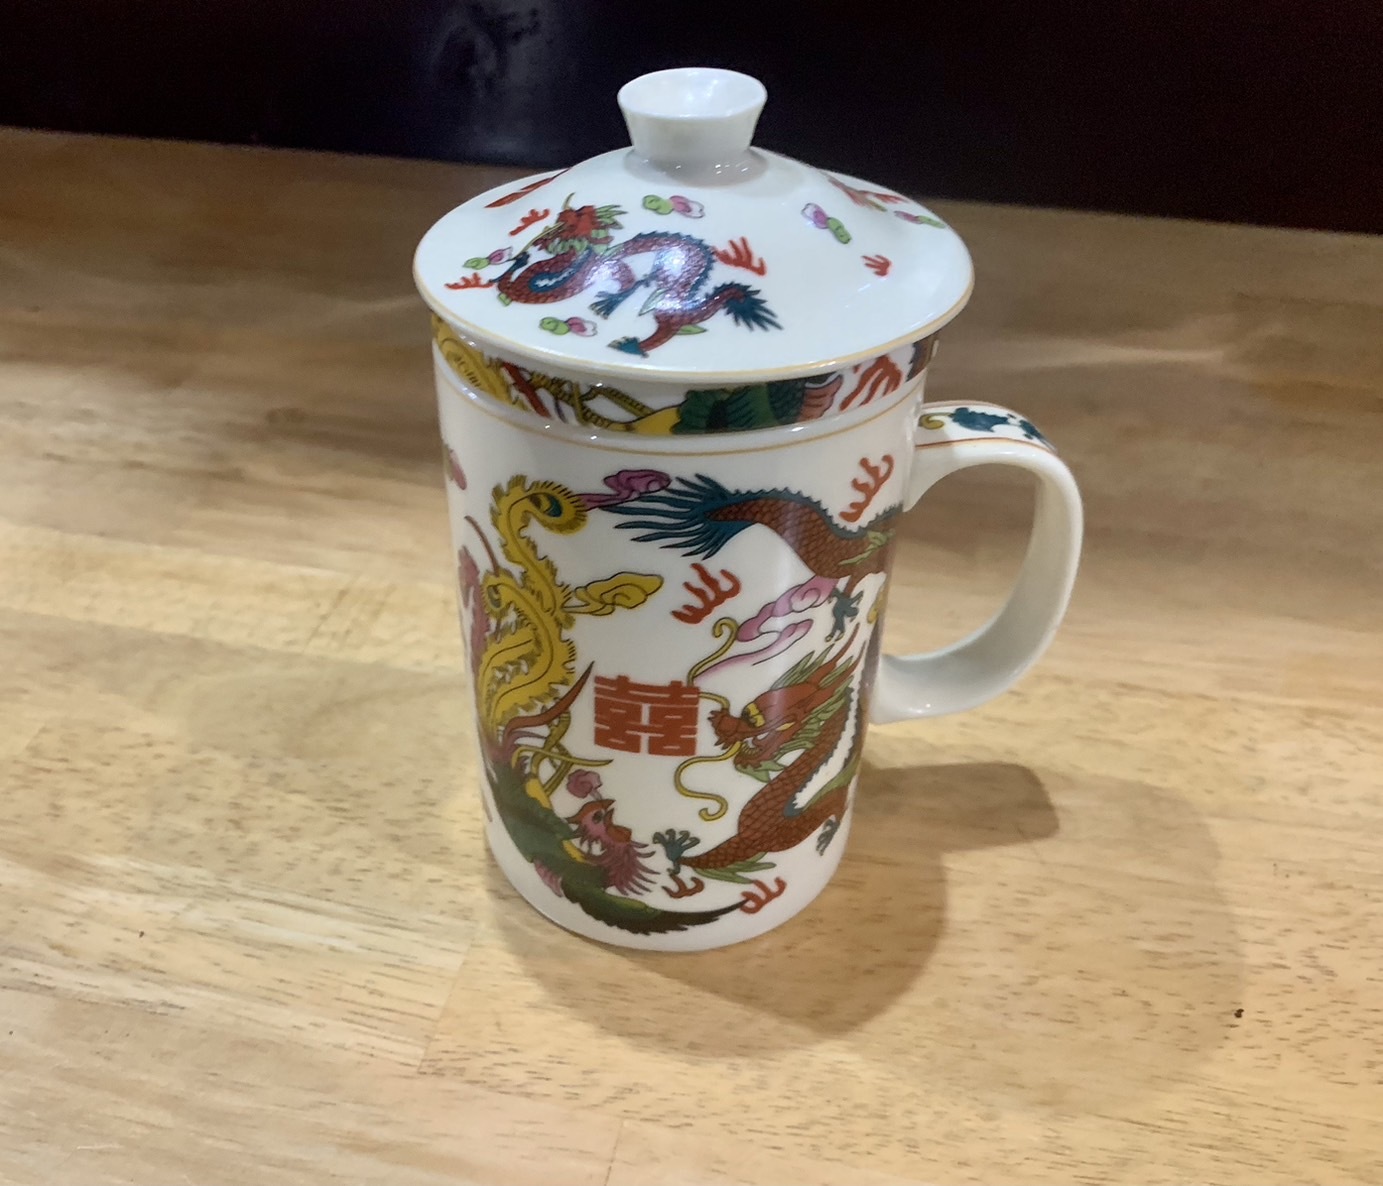 沖野さんが上海から仕入れた茶器